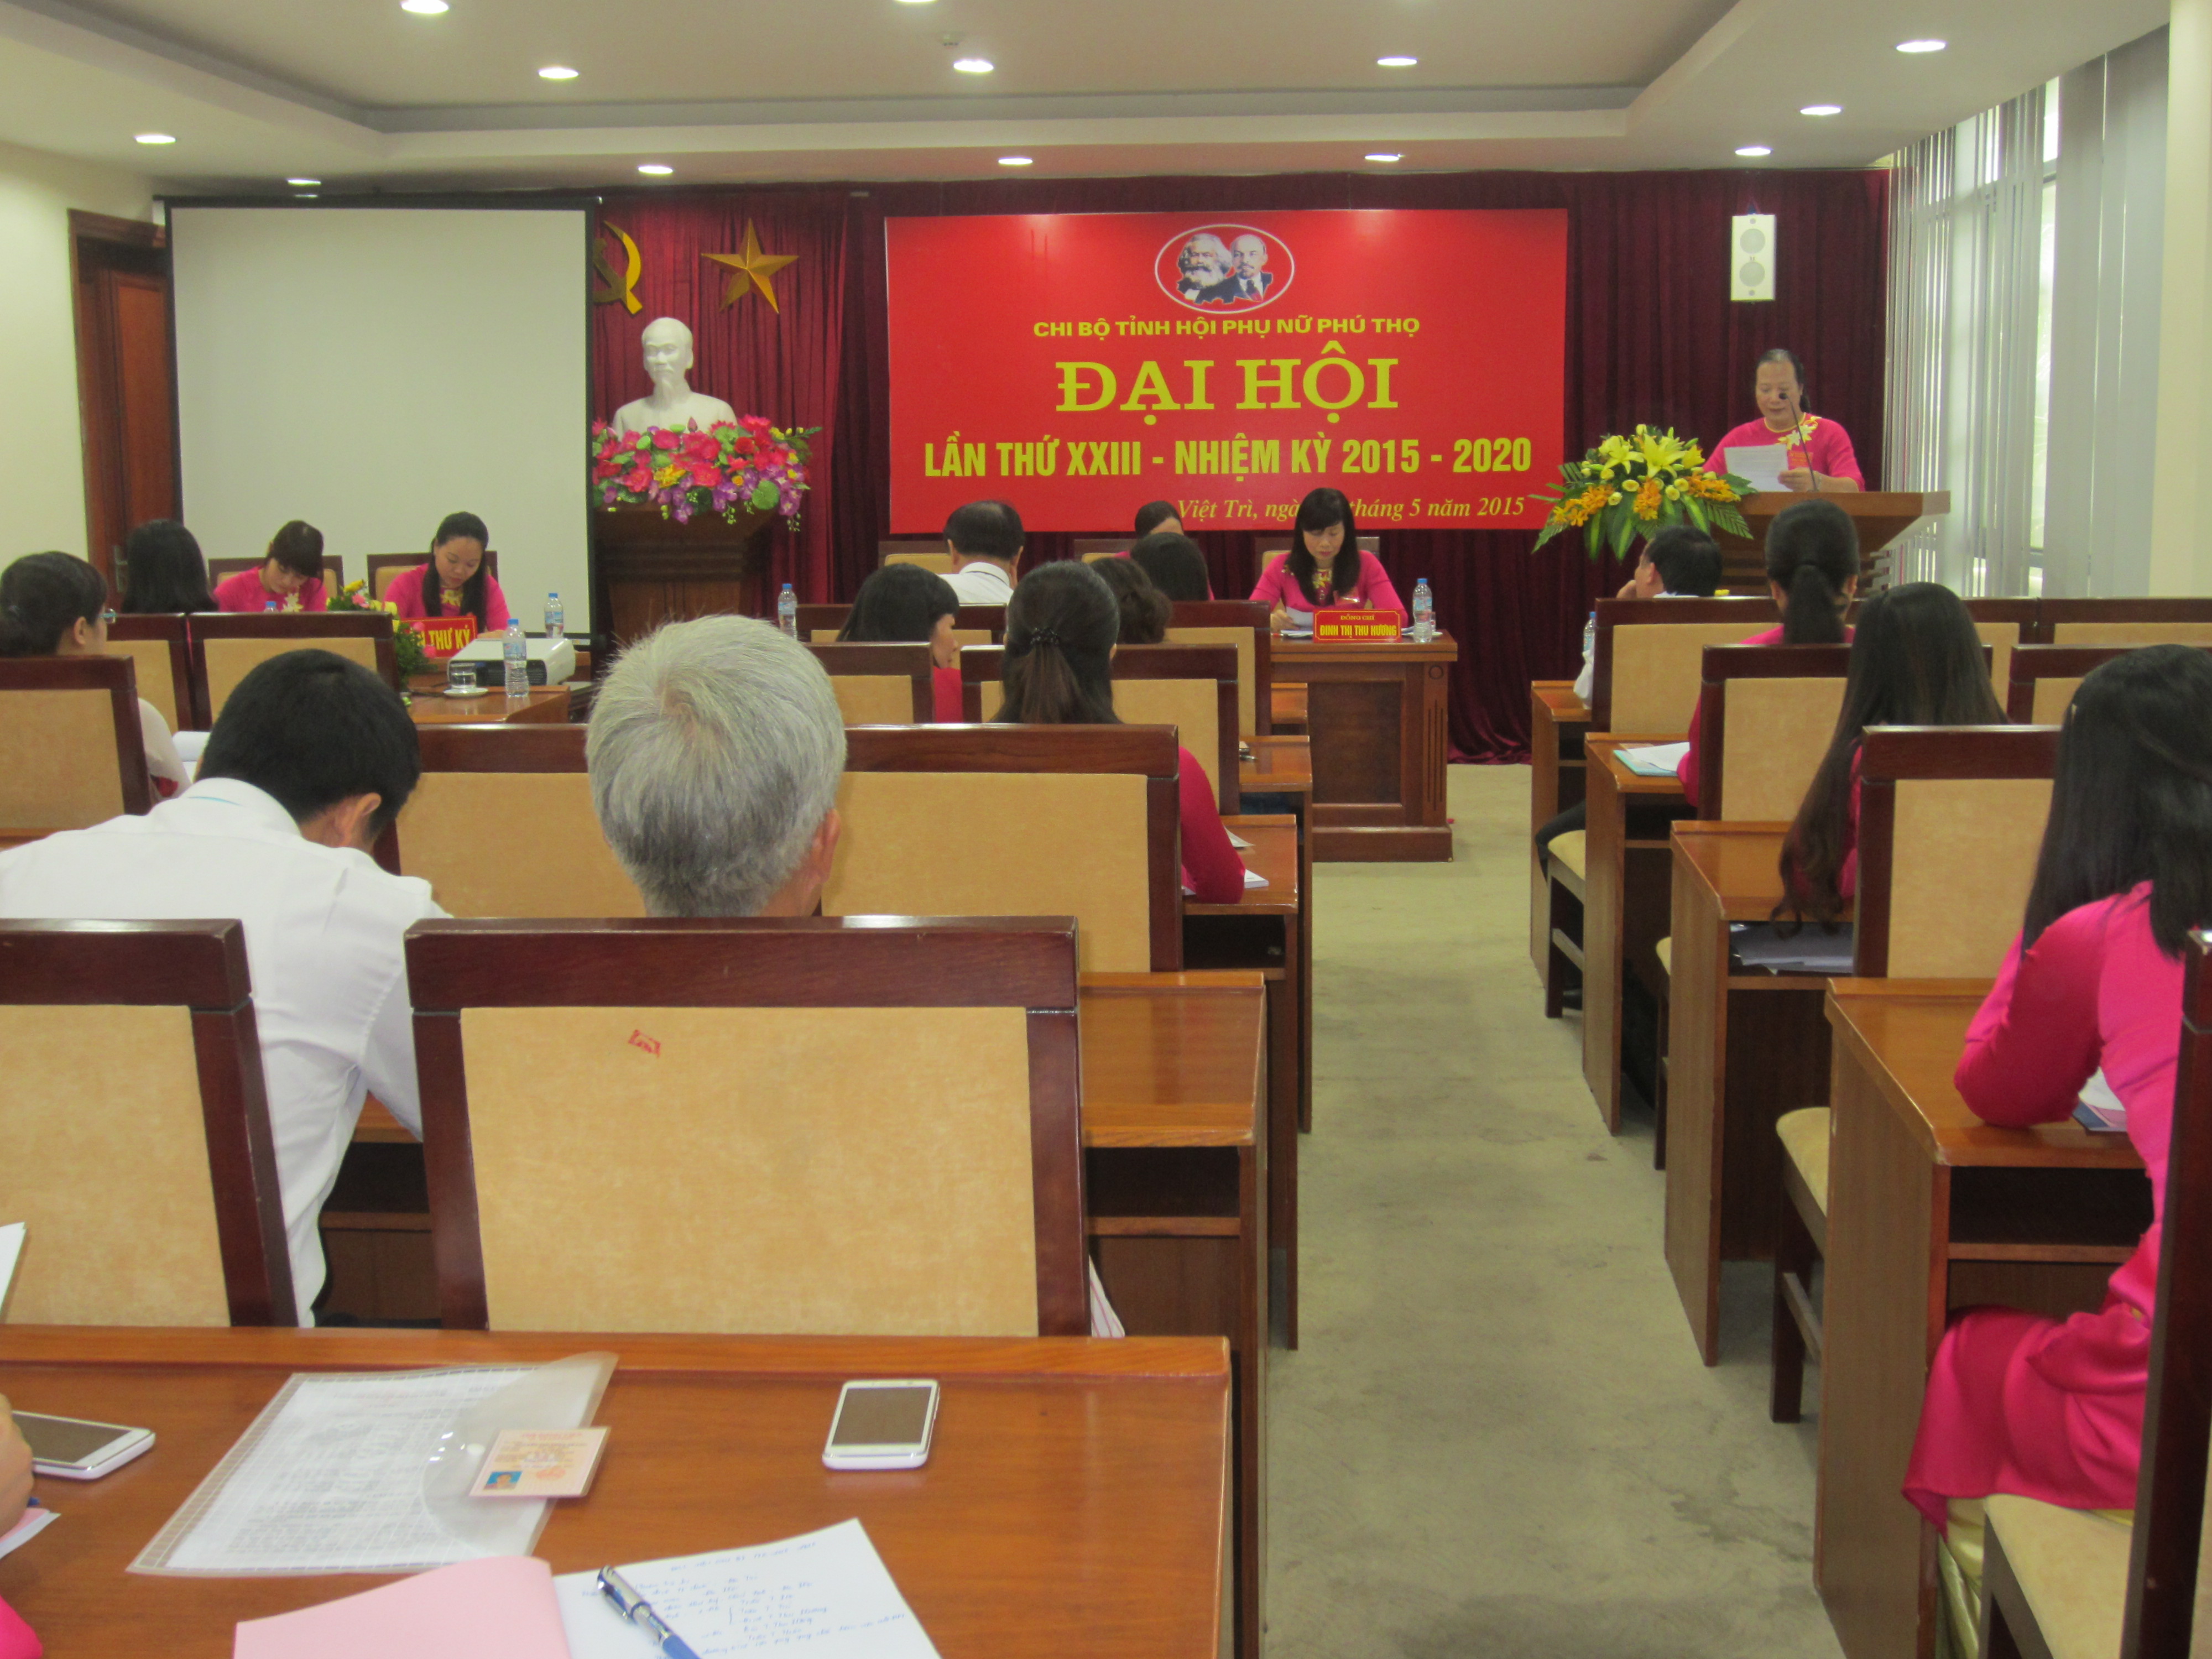 Chùm ảnh Đại hội chi bộ Tỉnh hội phụ nữ Phú Thọ lần thứ XXIII nhiệm kỳ 2015 - 2020